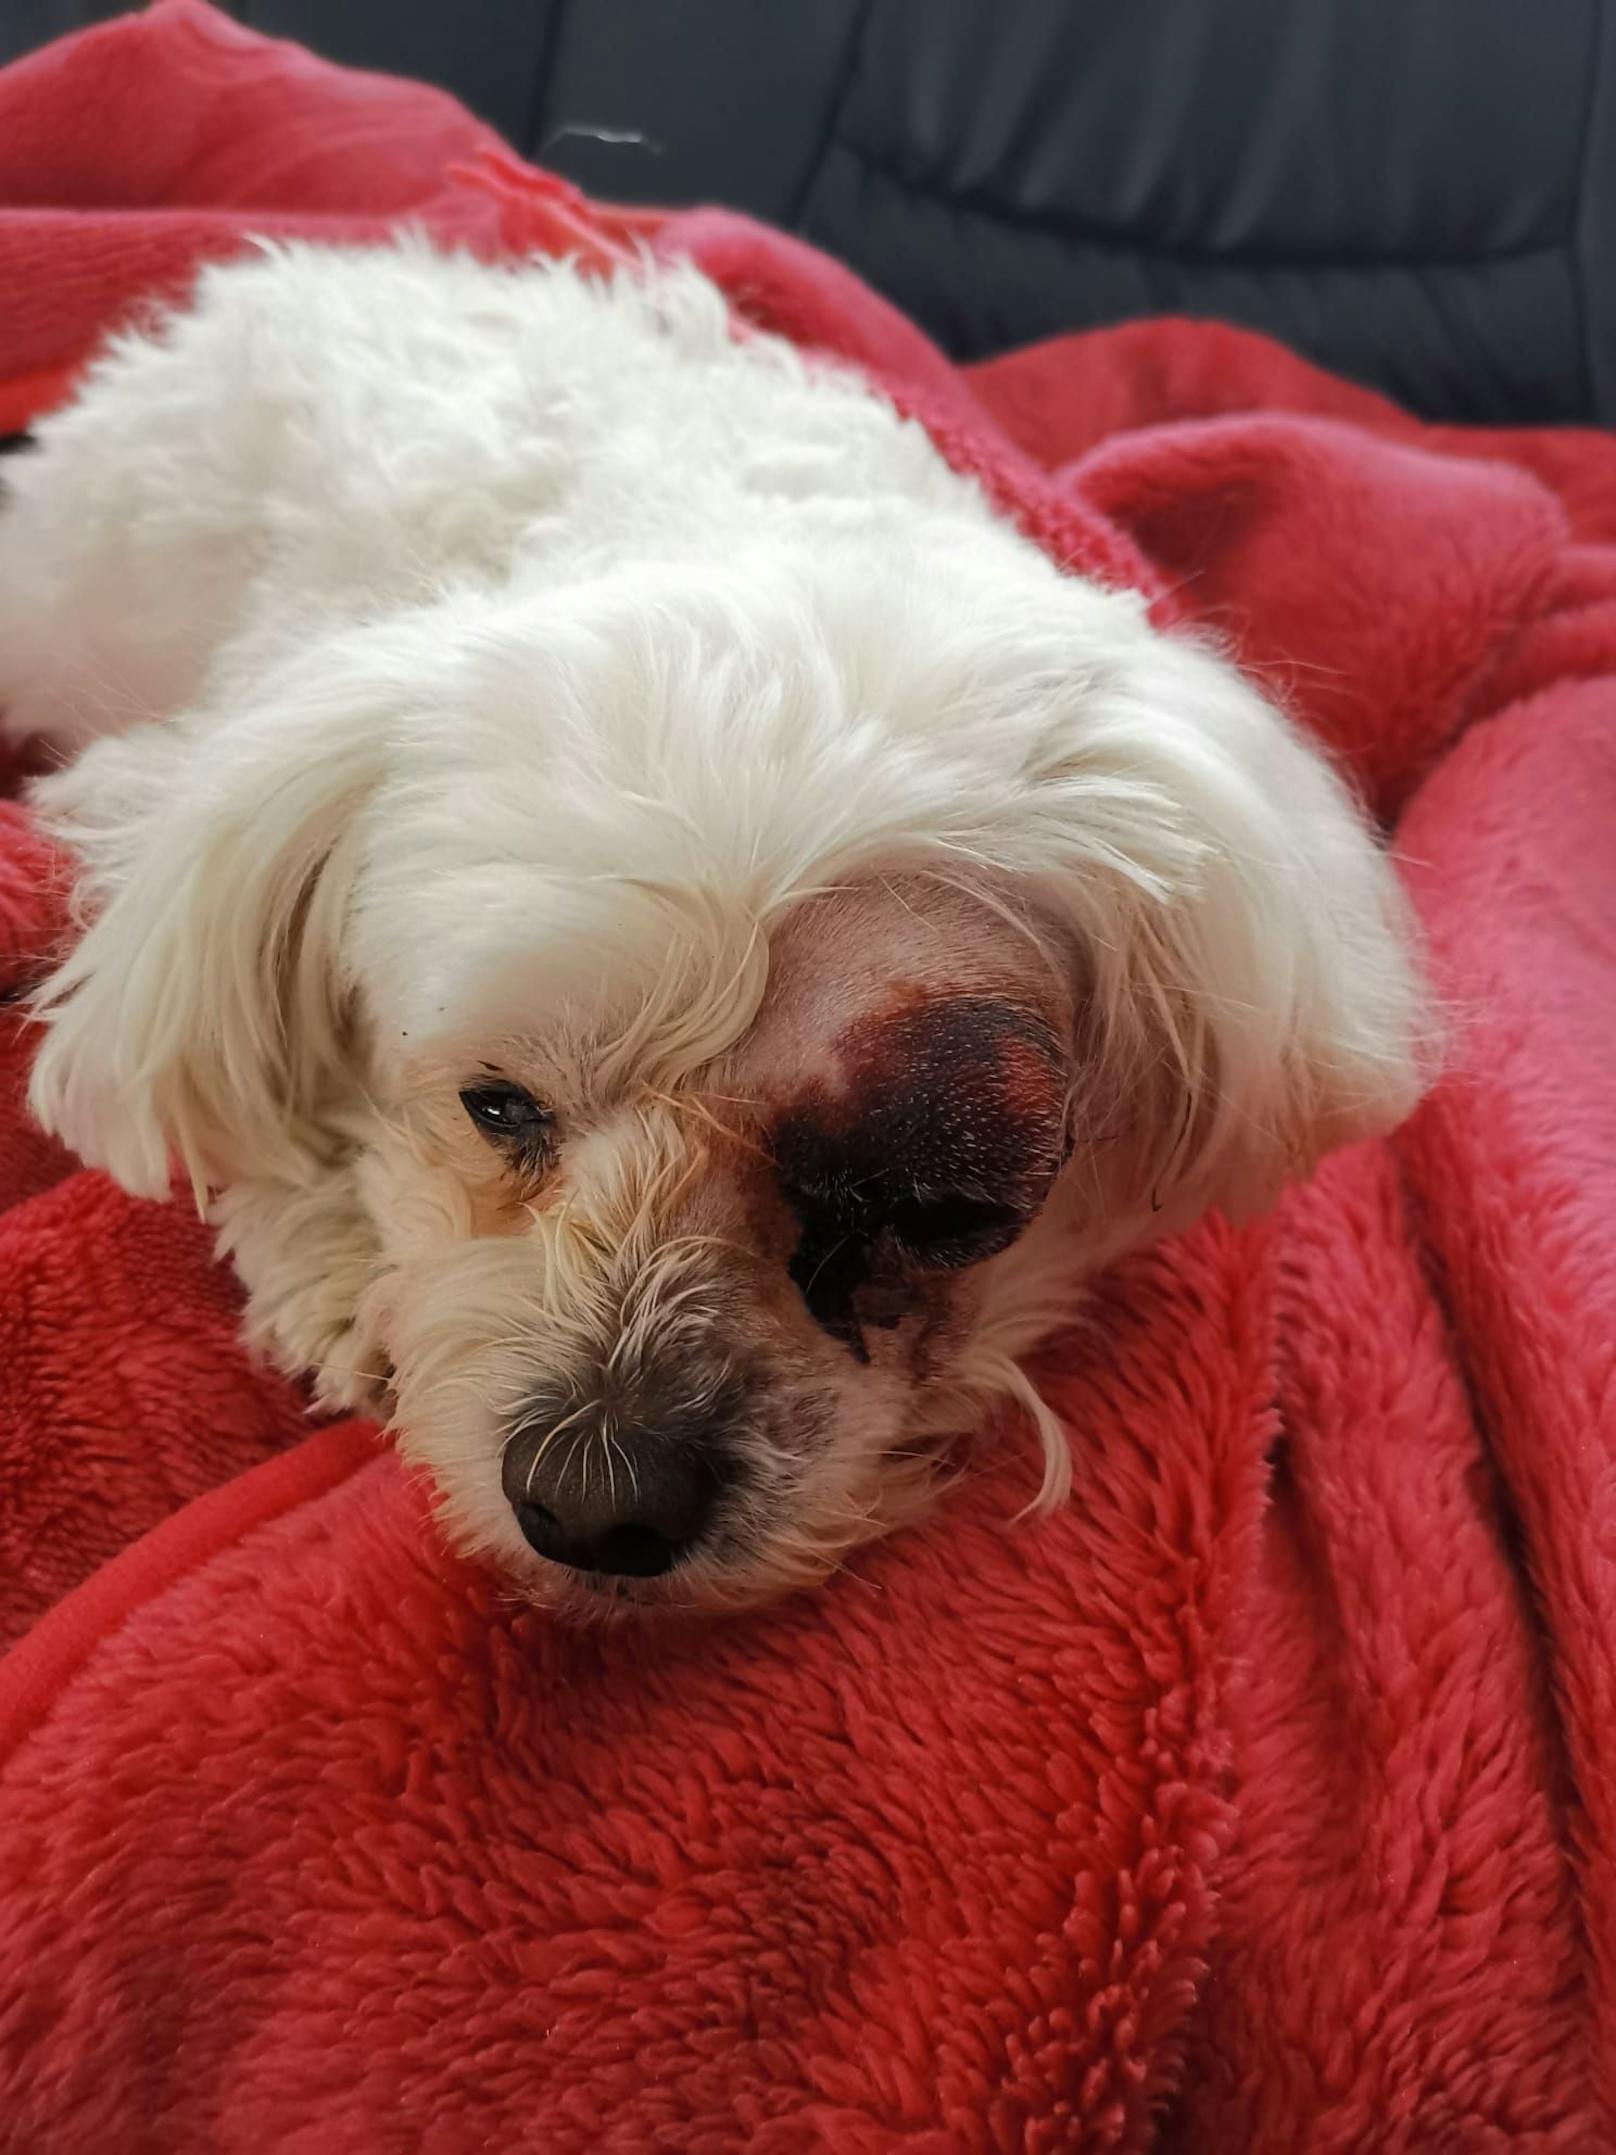 De neunjährige Malteserhündin "Lady" muss notfallmässig betreut werden. Ihr linkes Auge wurde schwer verletzt.